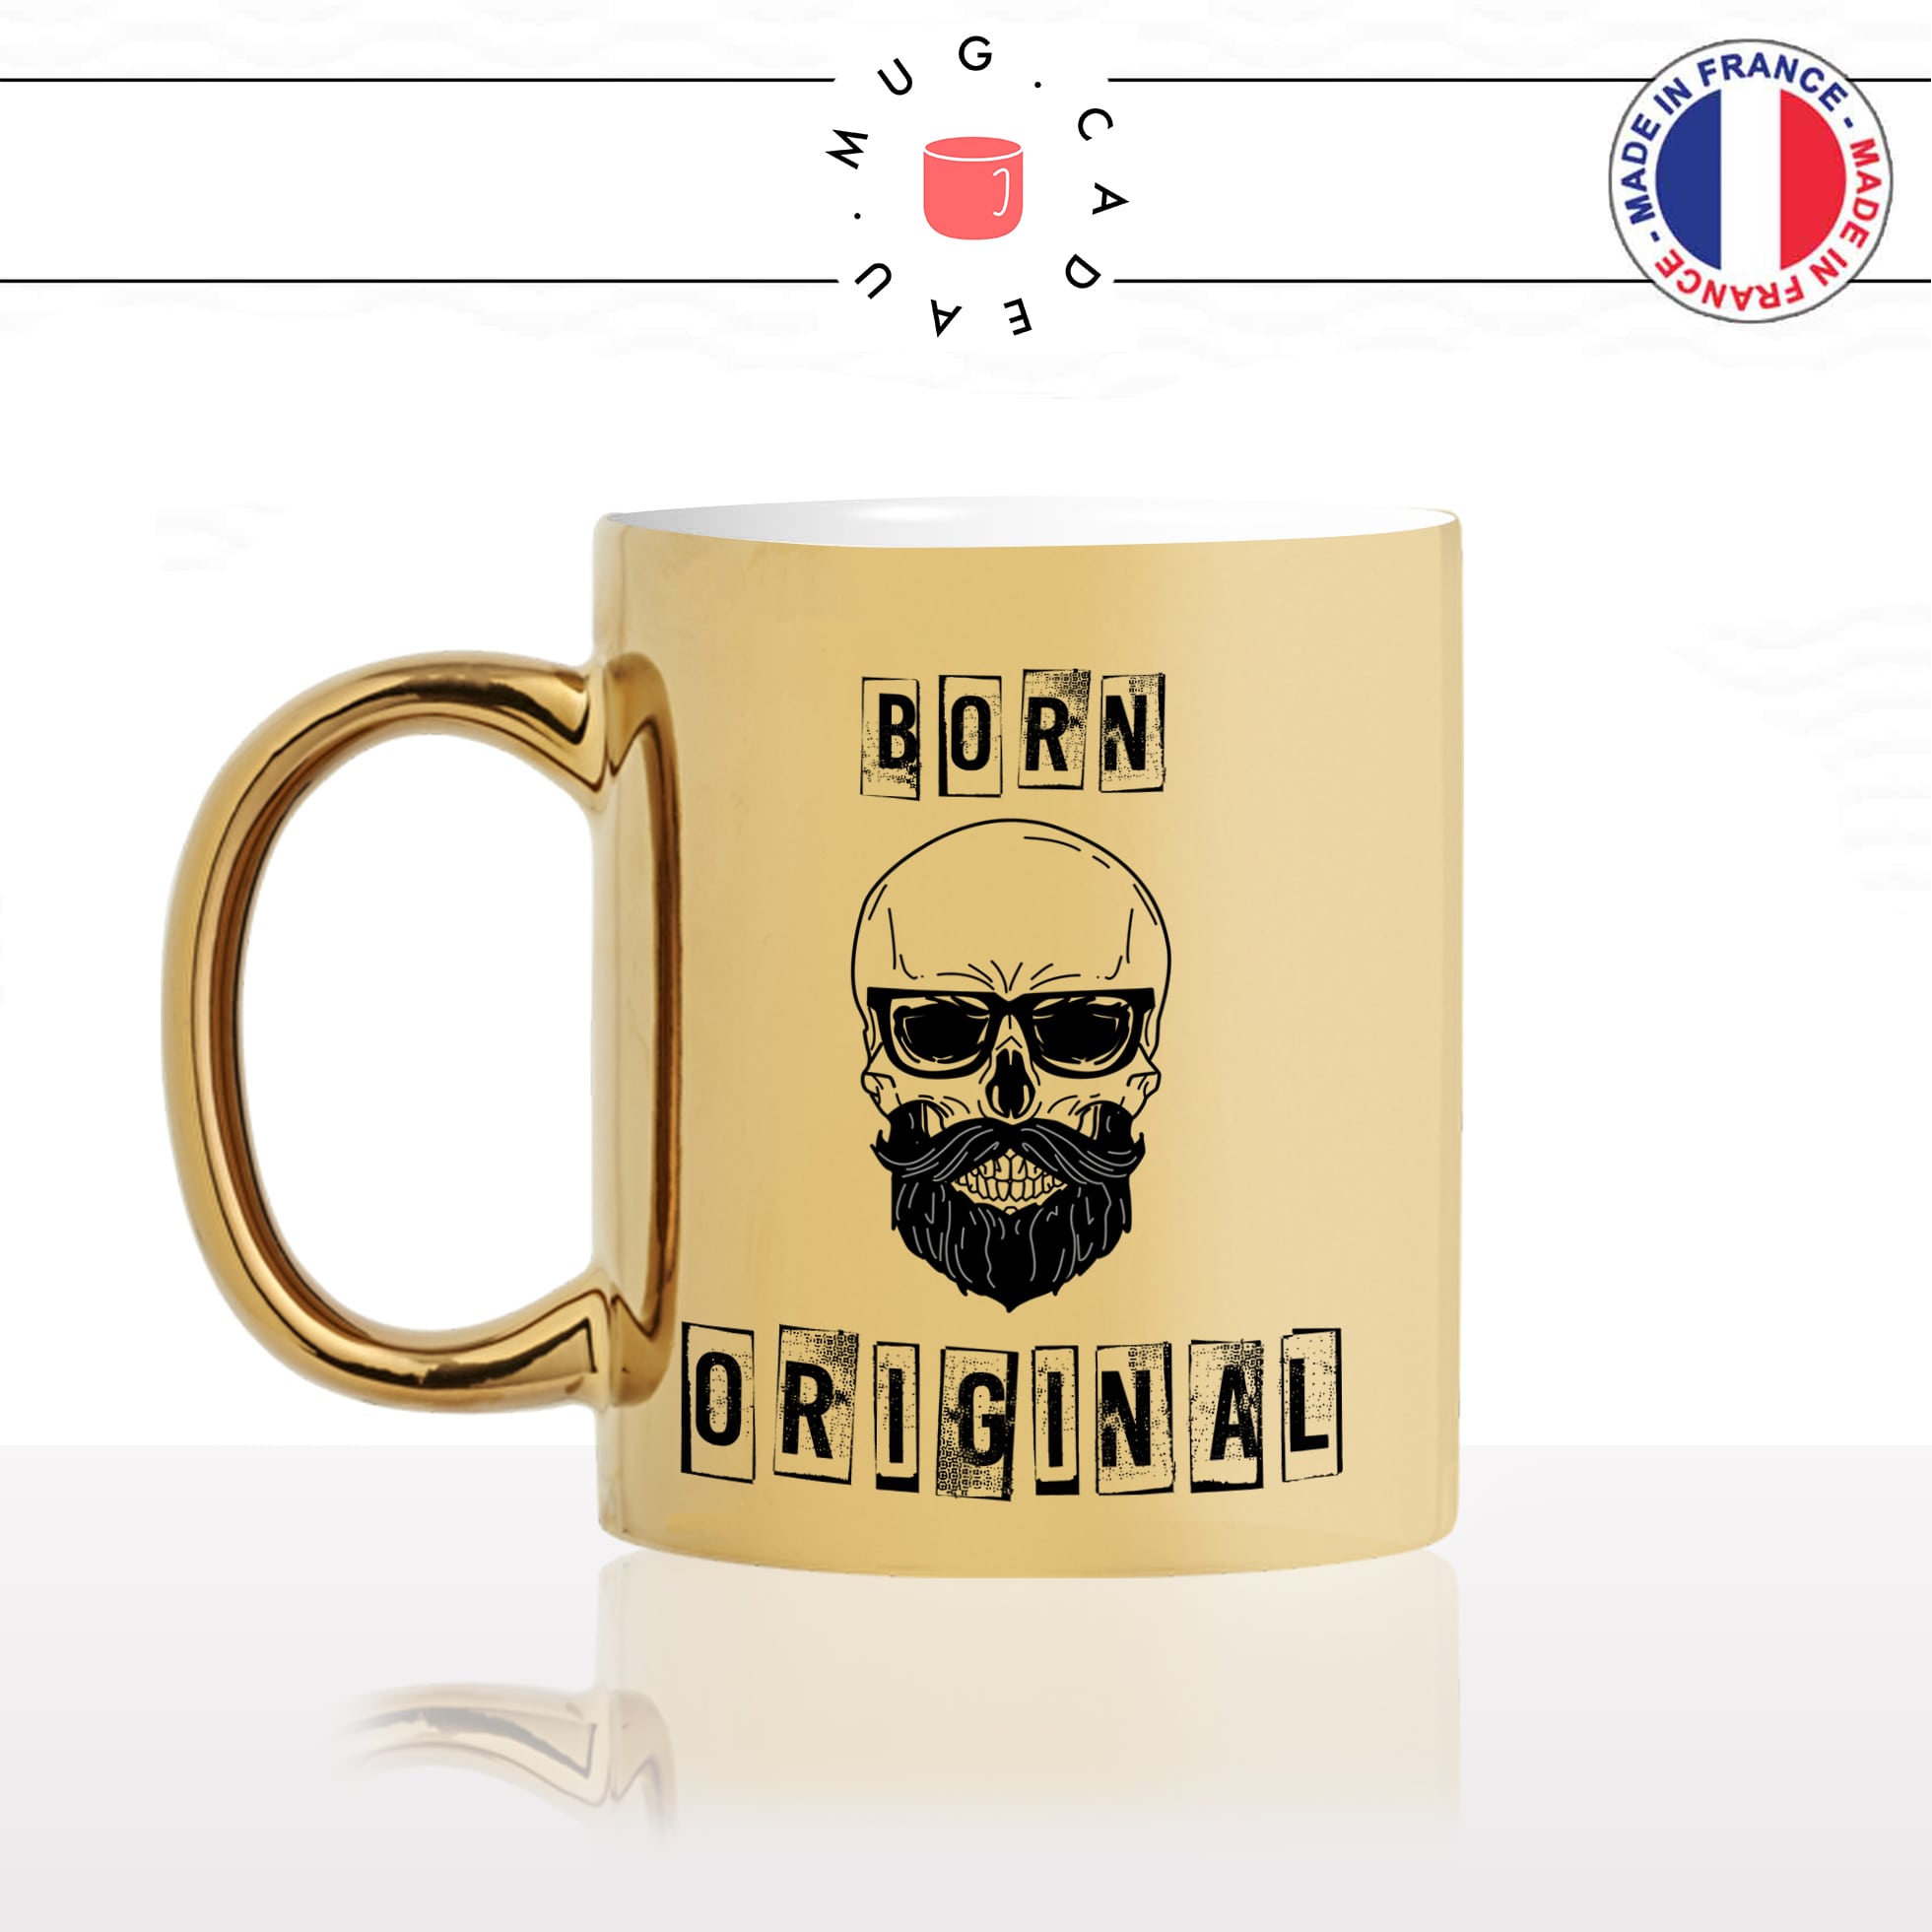 mug-tasse-doré-or-gold-homme-born-original-hipster-tete-de-mort-lunettes-de-soleil-barbe-cool-humour-fun-idée-cadeau-personnalisé-café-thé-min